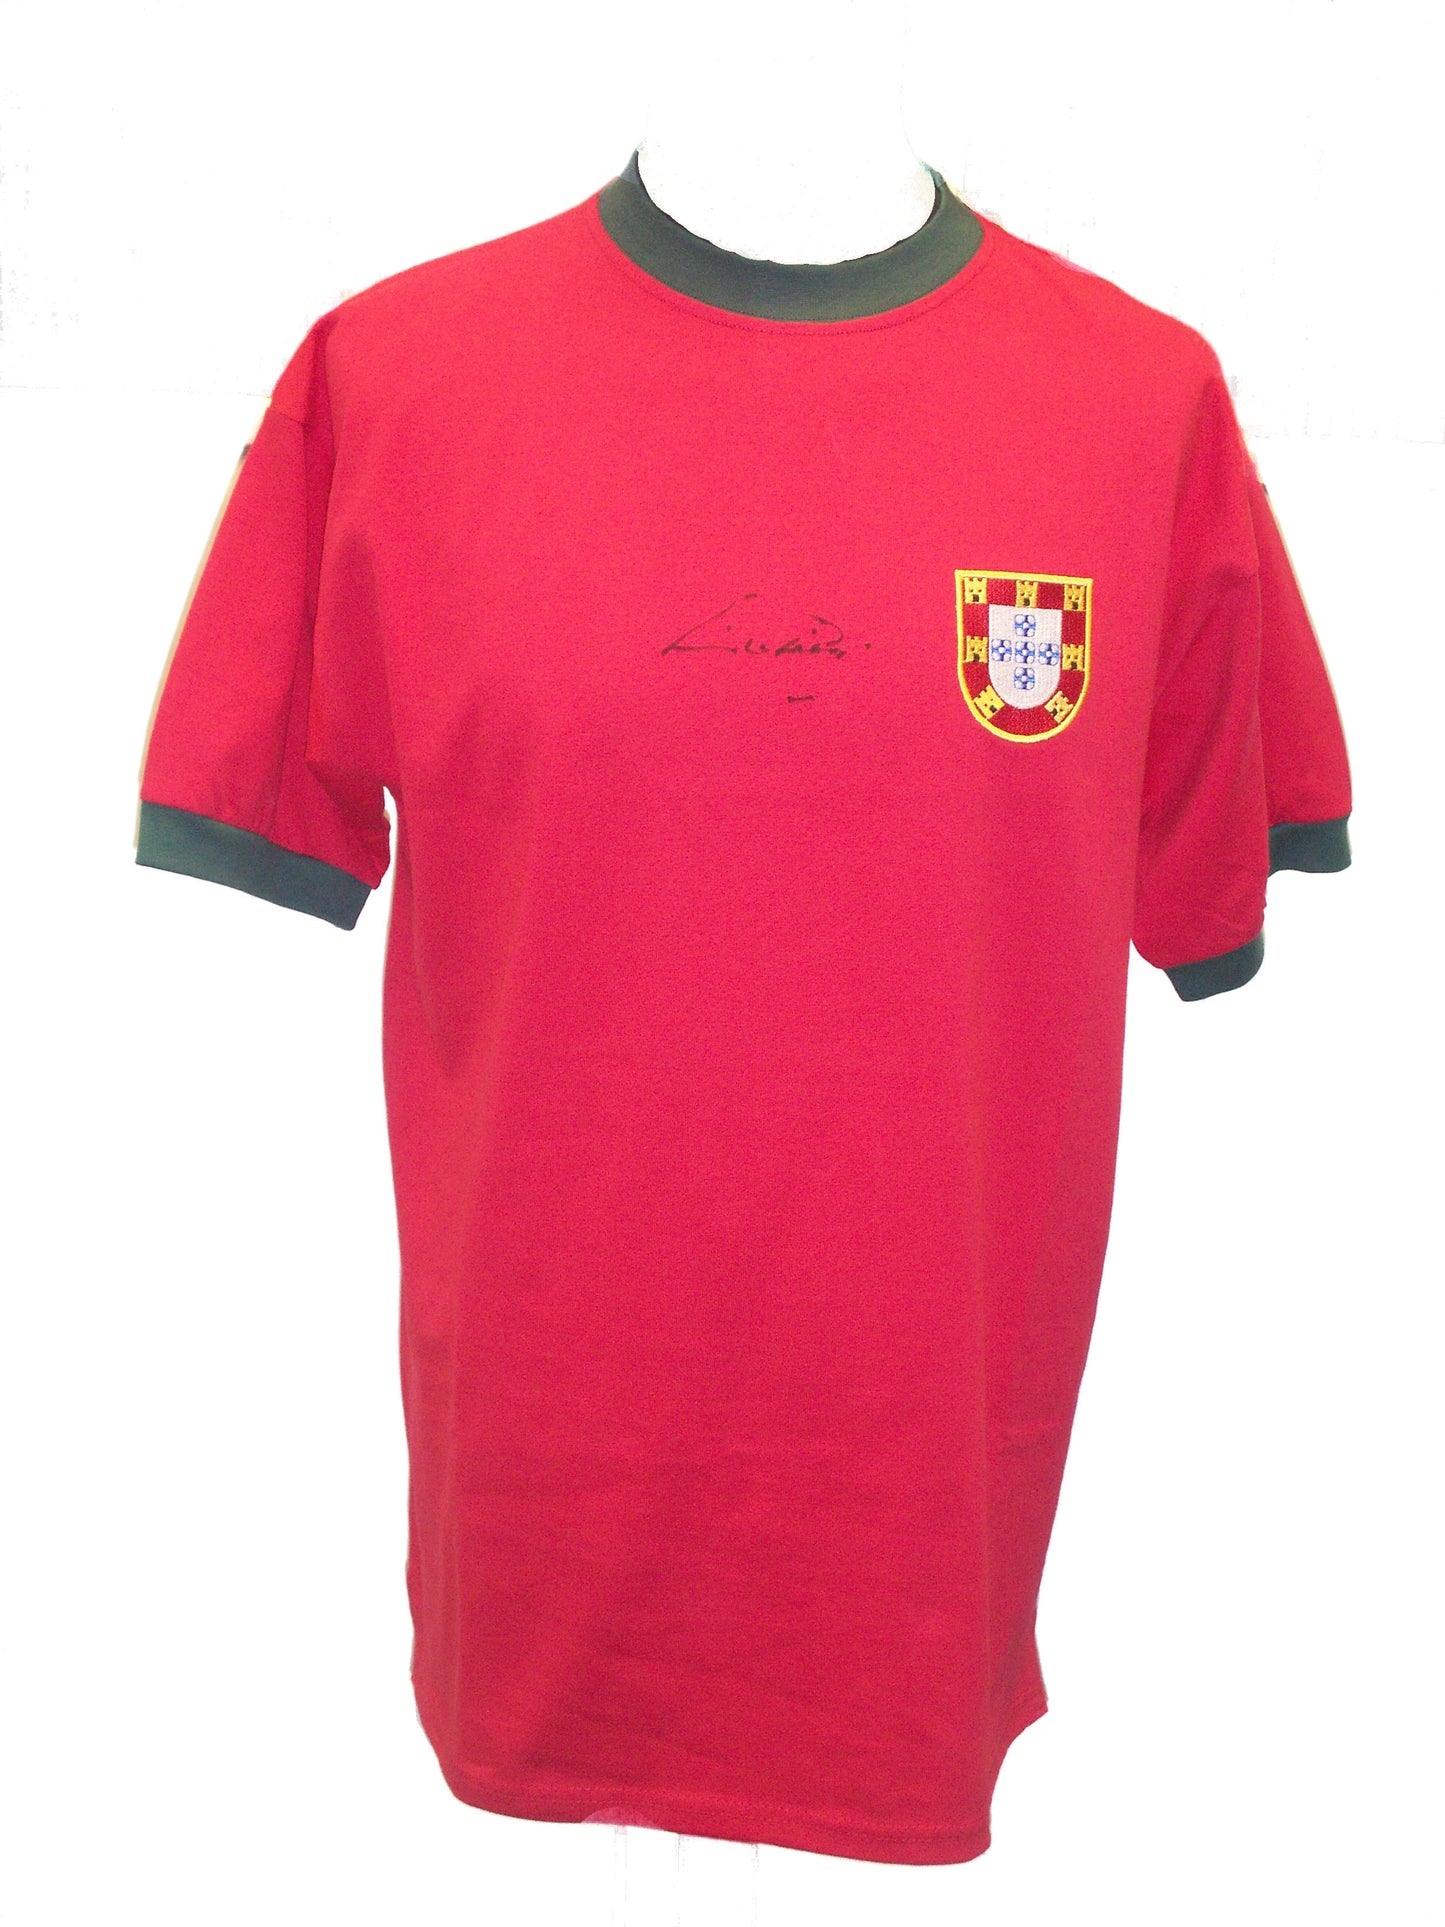 Eusébio Signed Portugal Shirt